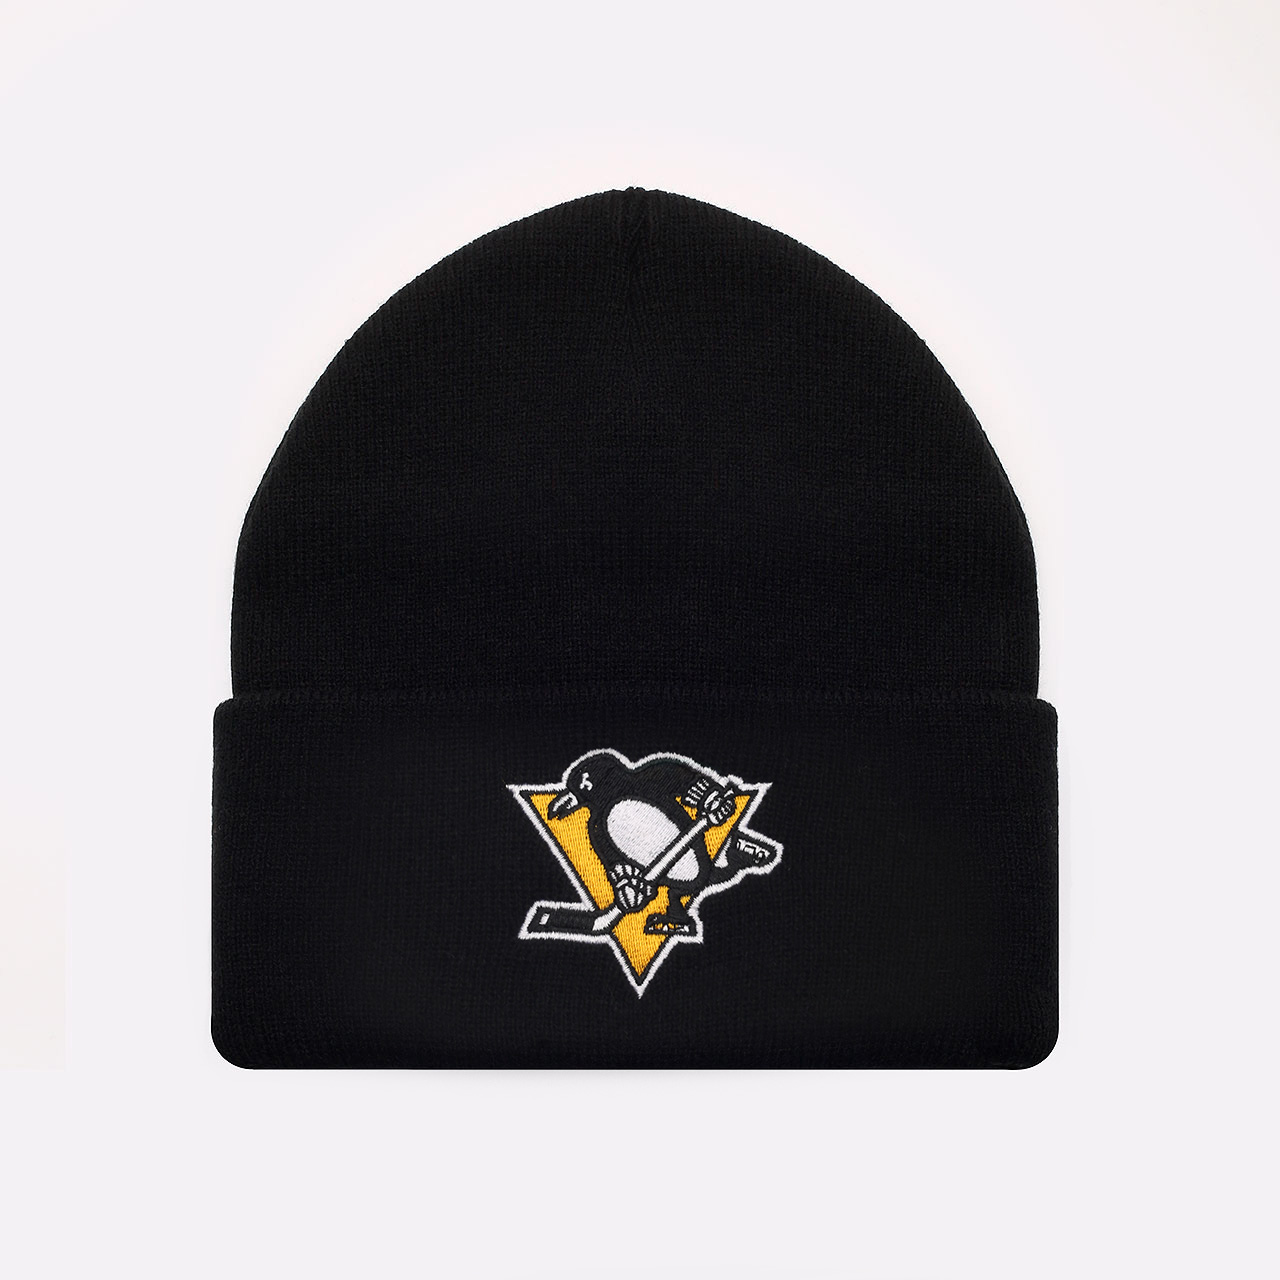  черная шапка Mitchell and ness Pittsburgh Penguins EU785-BLACK PITTSBU - цена, описание, фото 1